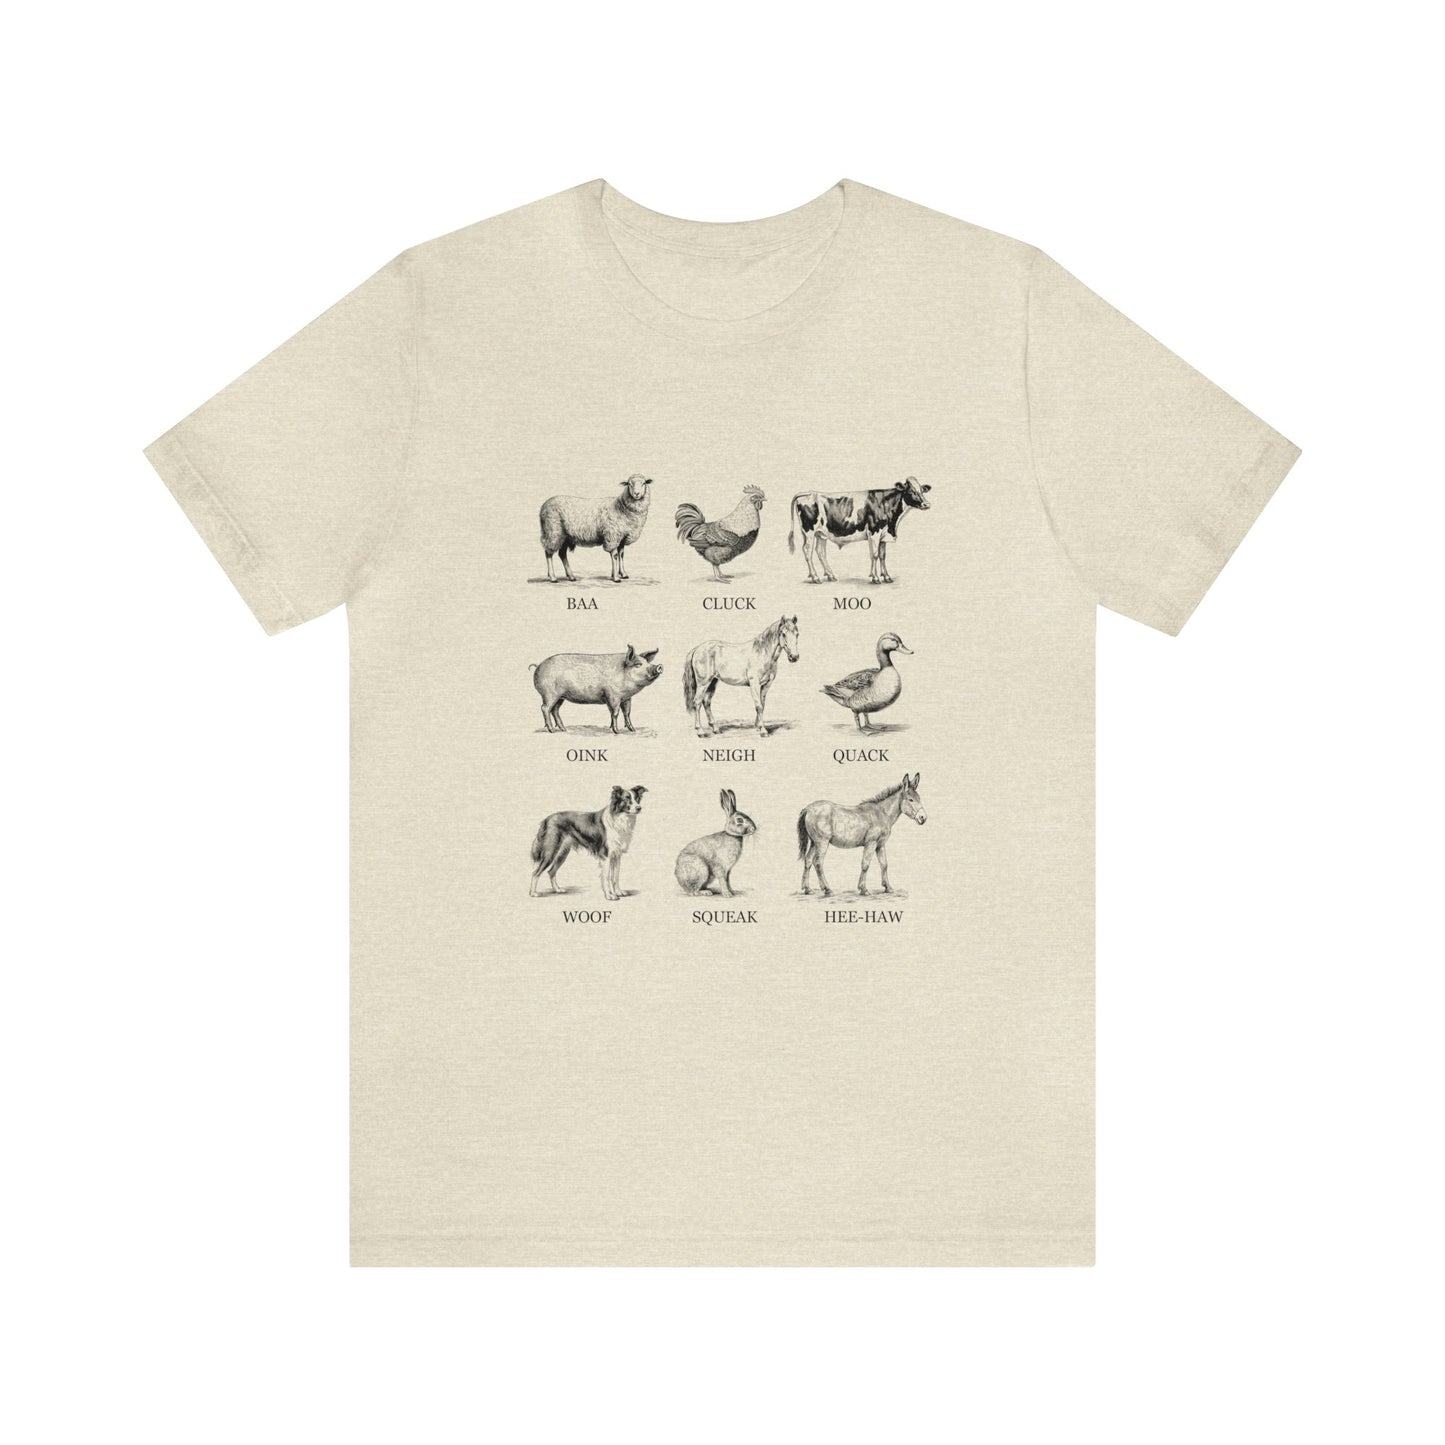 Farm Life Farm Animals Women's Tshirt